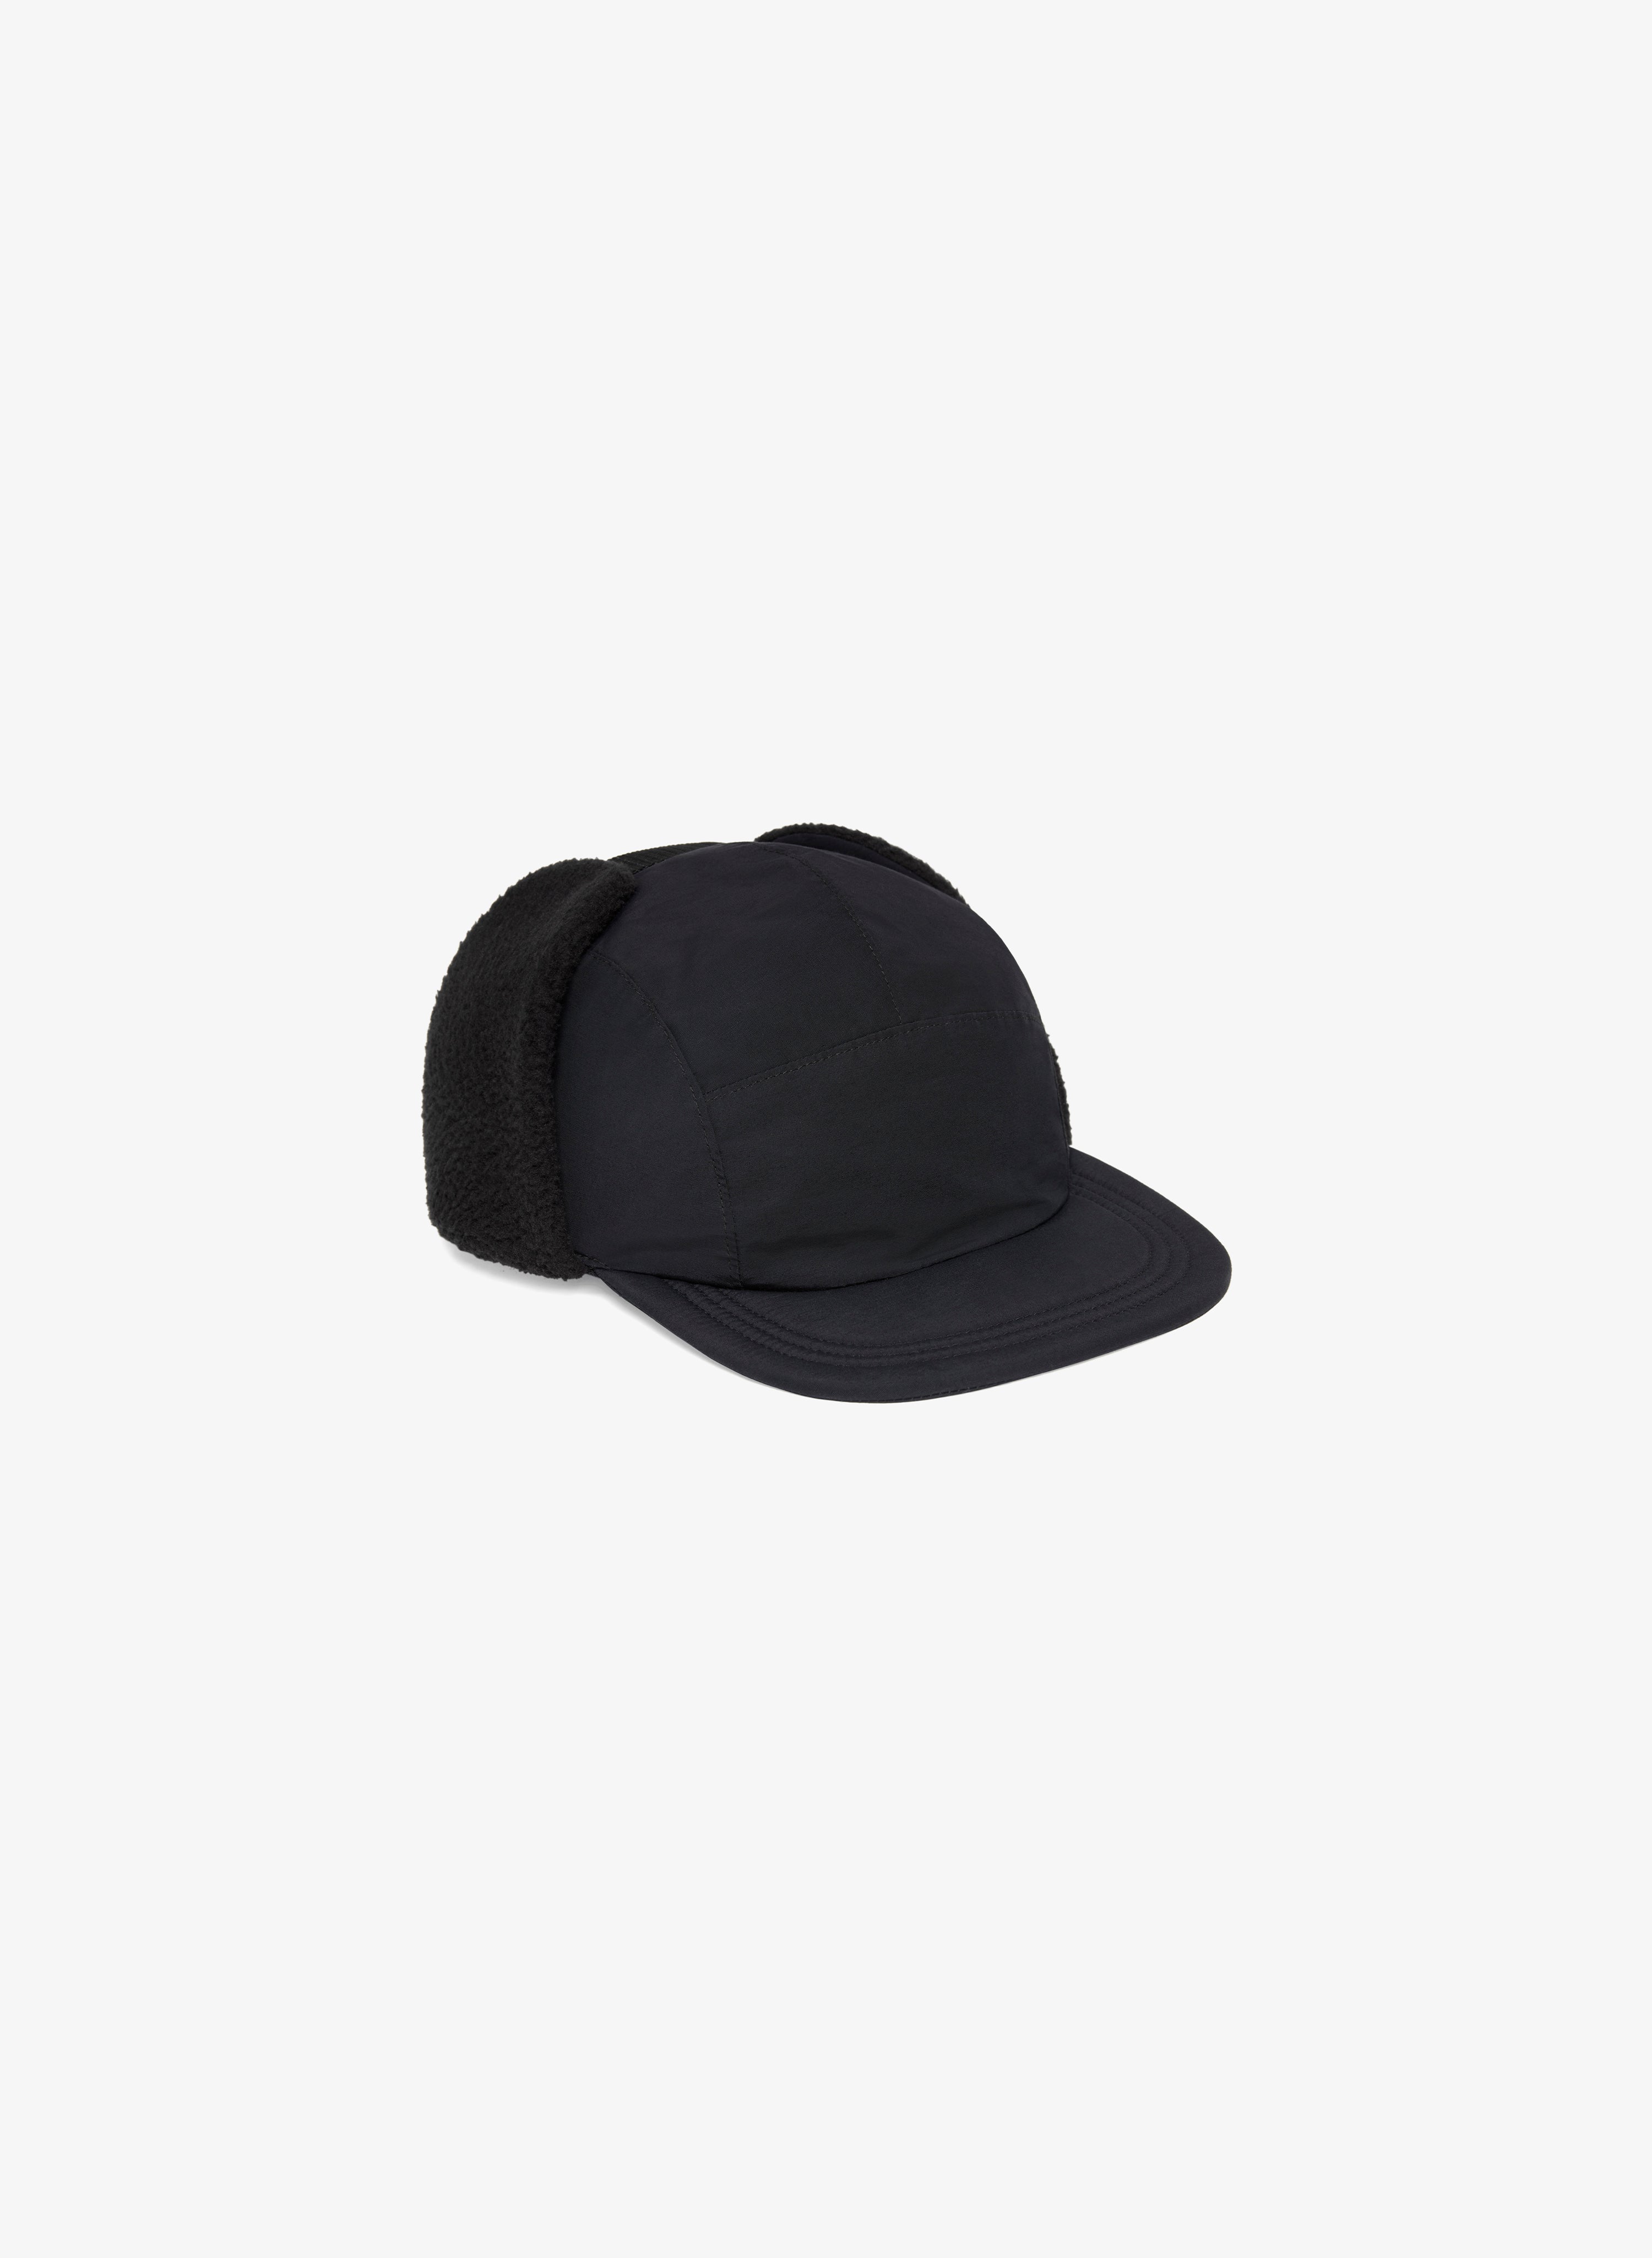 Camper Winter Cap - Black – JJJJound